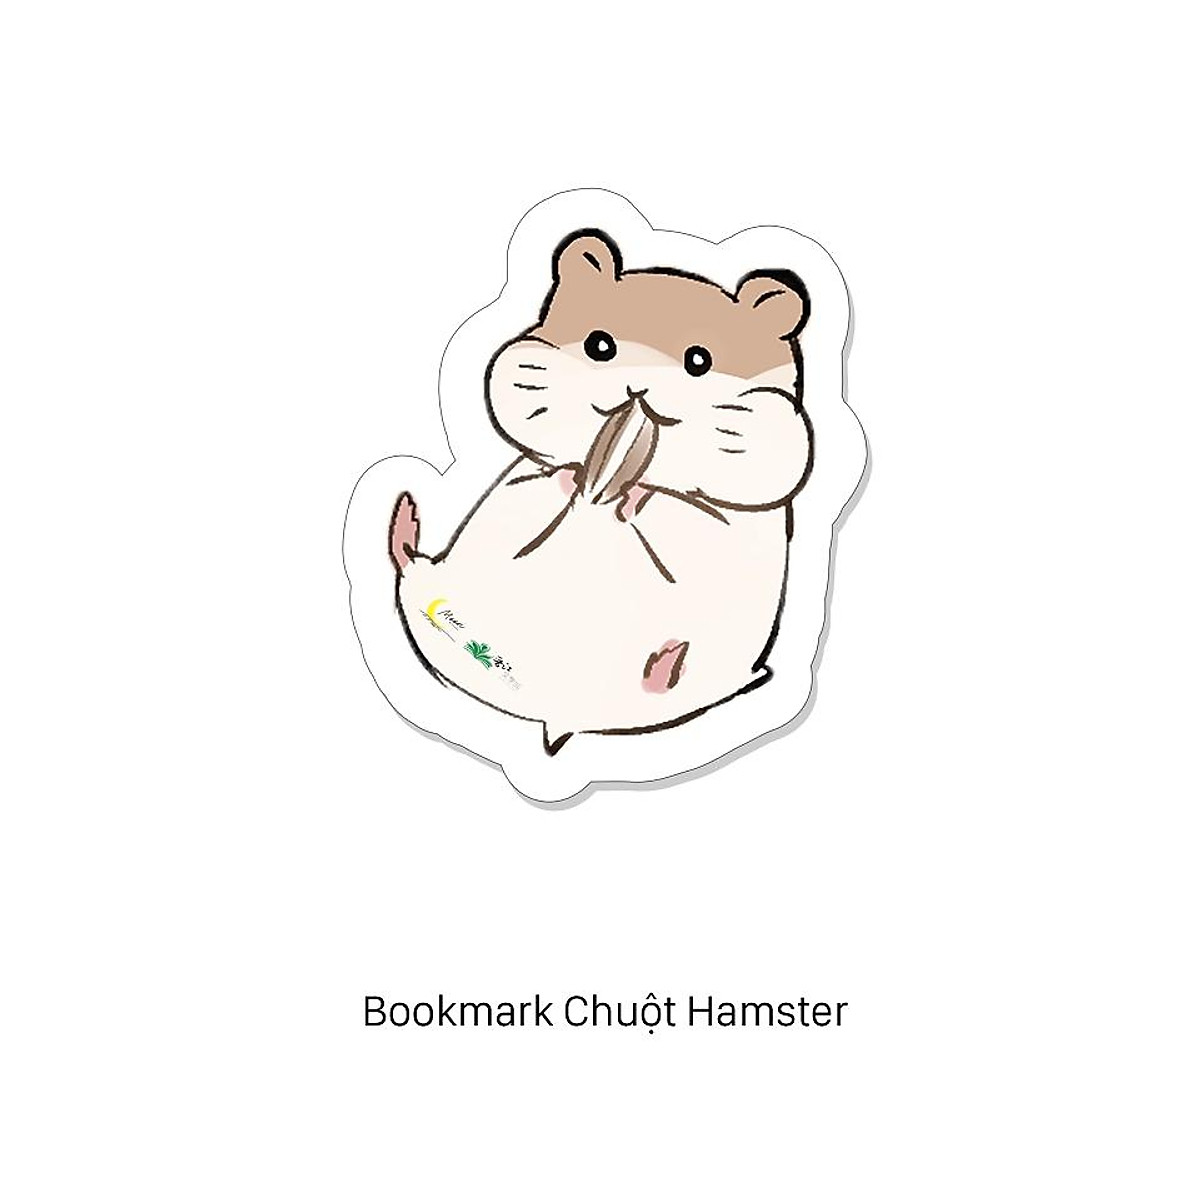 Tiểu thuyết tranh vẽ chuột hamster đáng yêu là một tác phẩm đọc rất tuyệt vời. Truyện kể về cuộc sống của chuột hamster thông minh và đáng yêu, mang lại nhiều cảm xúc và những bài học đáng giá cho người đọc.